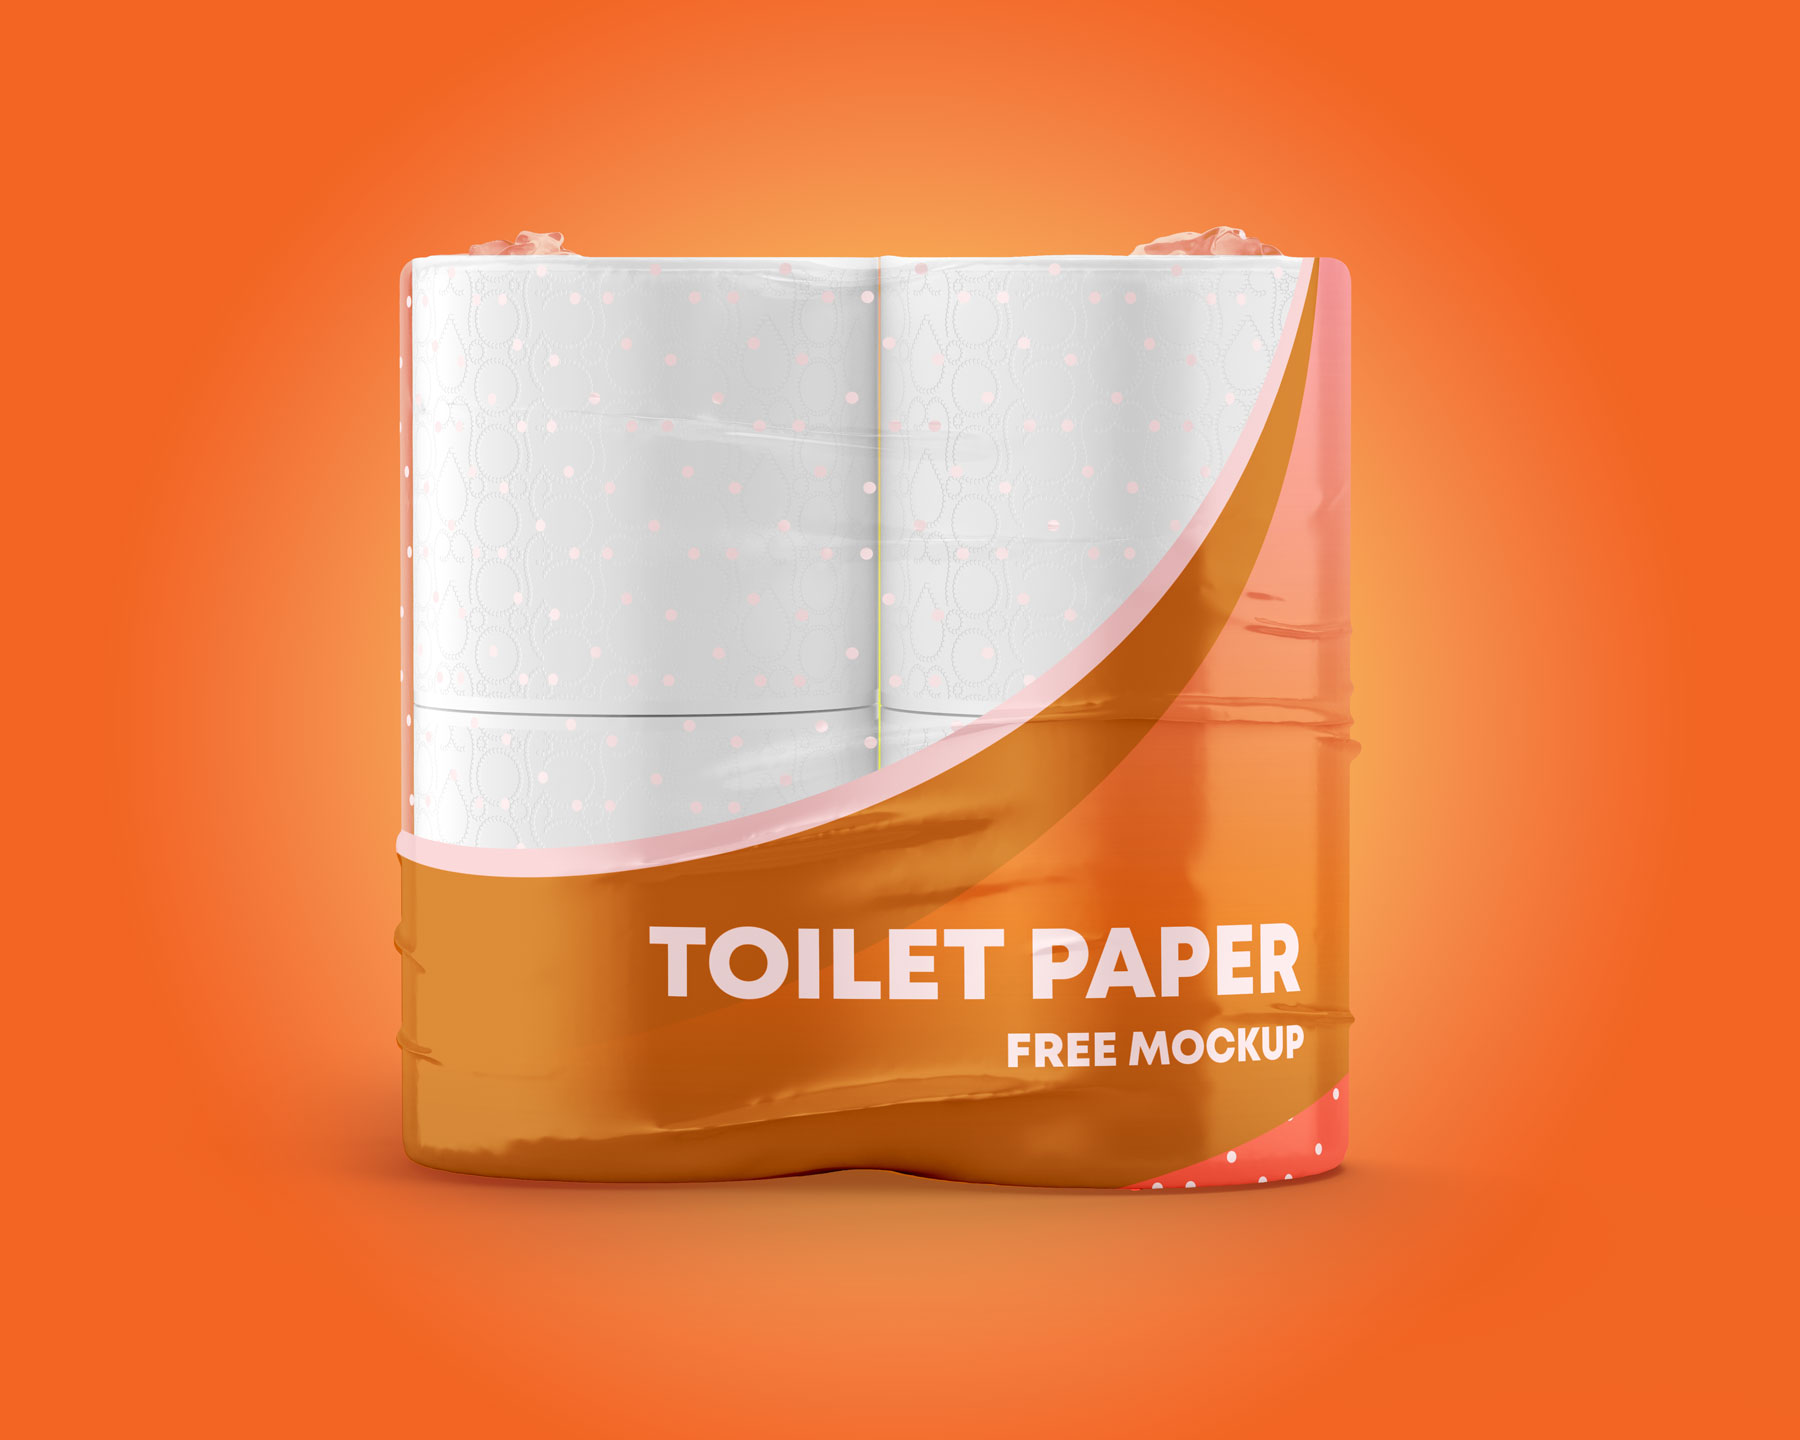 Toilet Tissue Rolls Mockups set for Branding